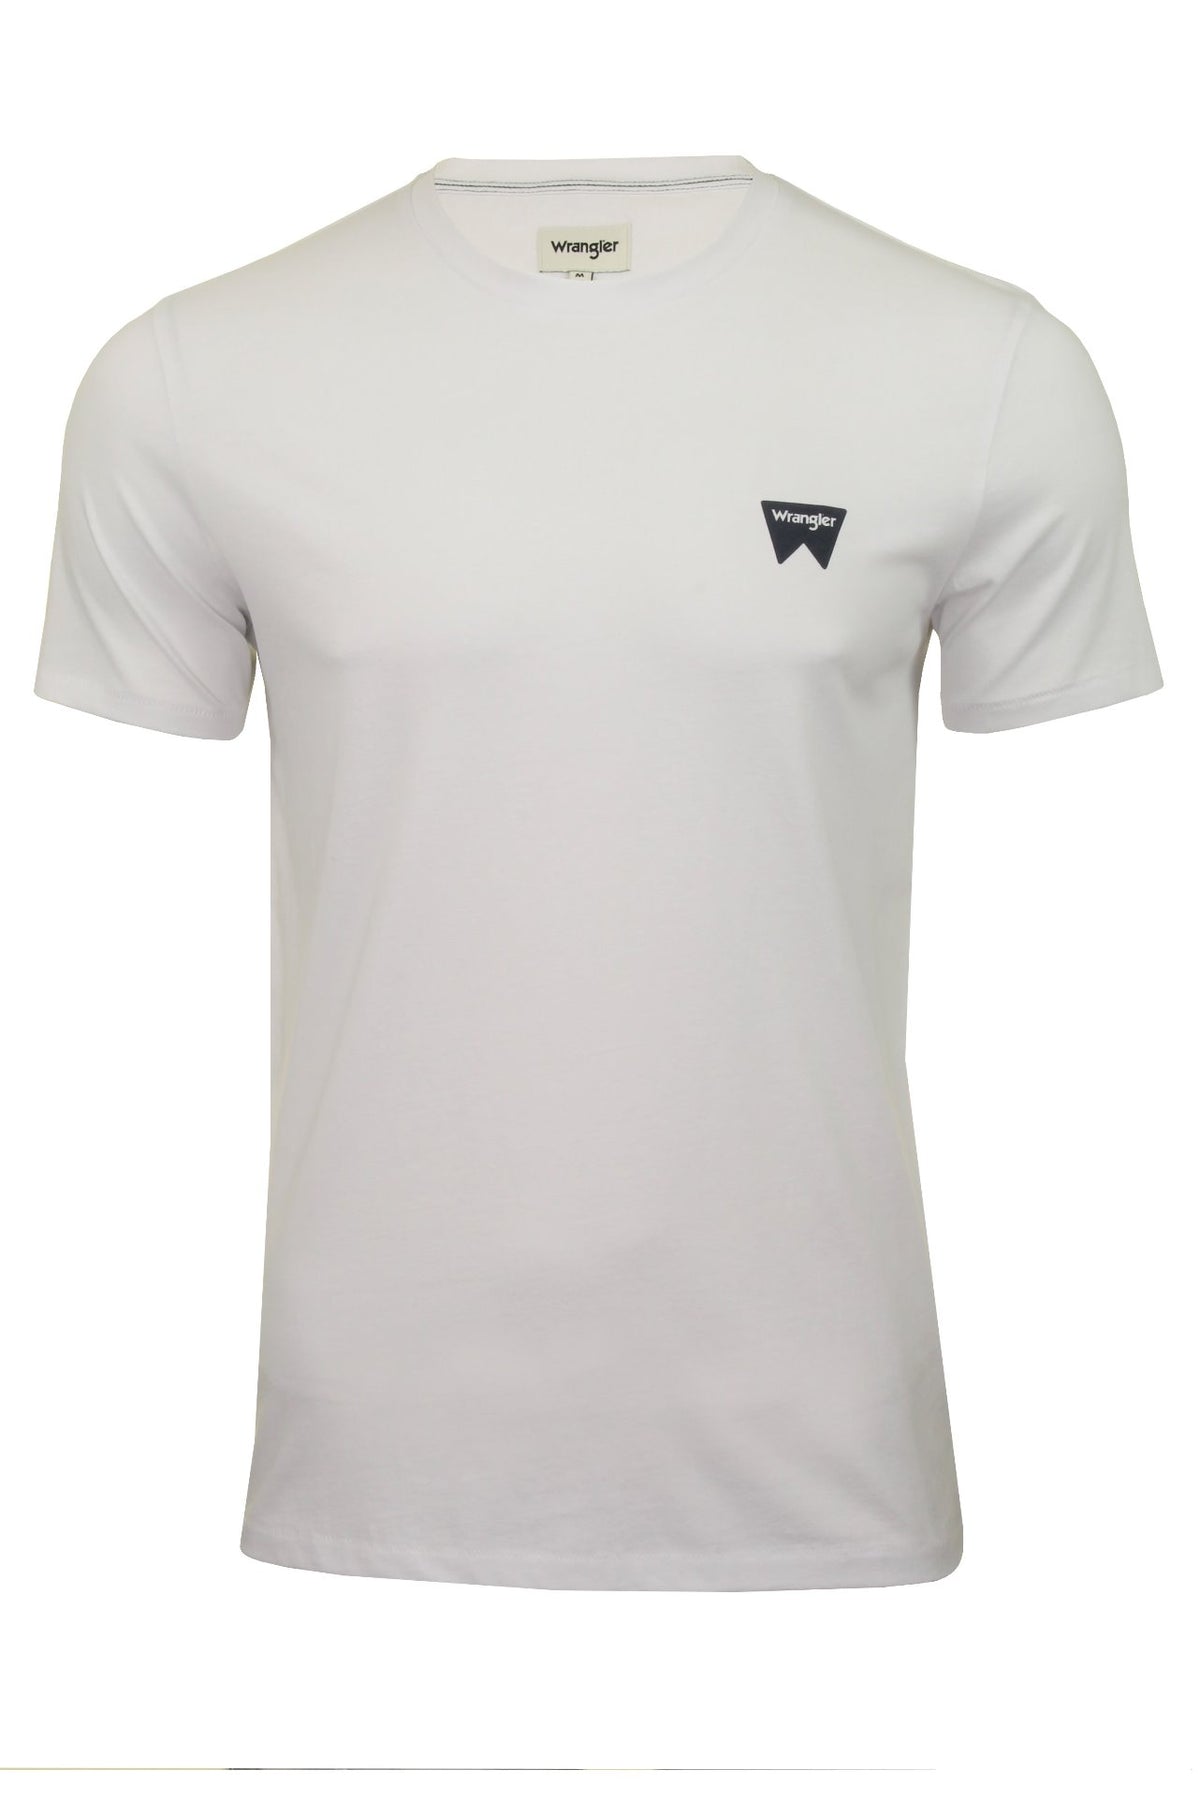 Wrangler Mens T-Shirt 'SS Sign off Tee', 01, W7C07D, White